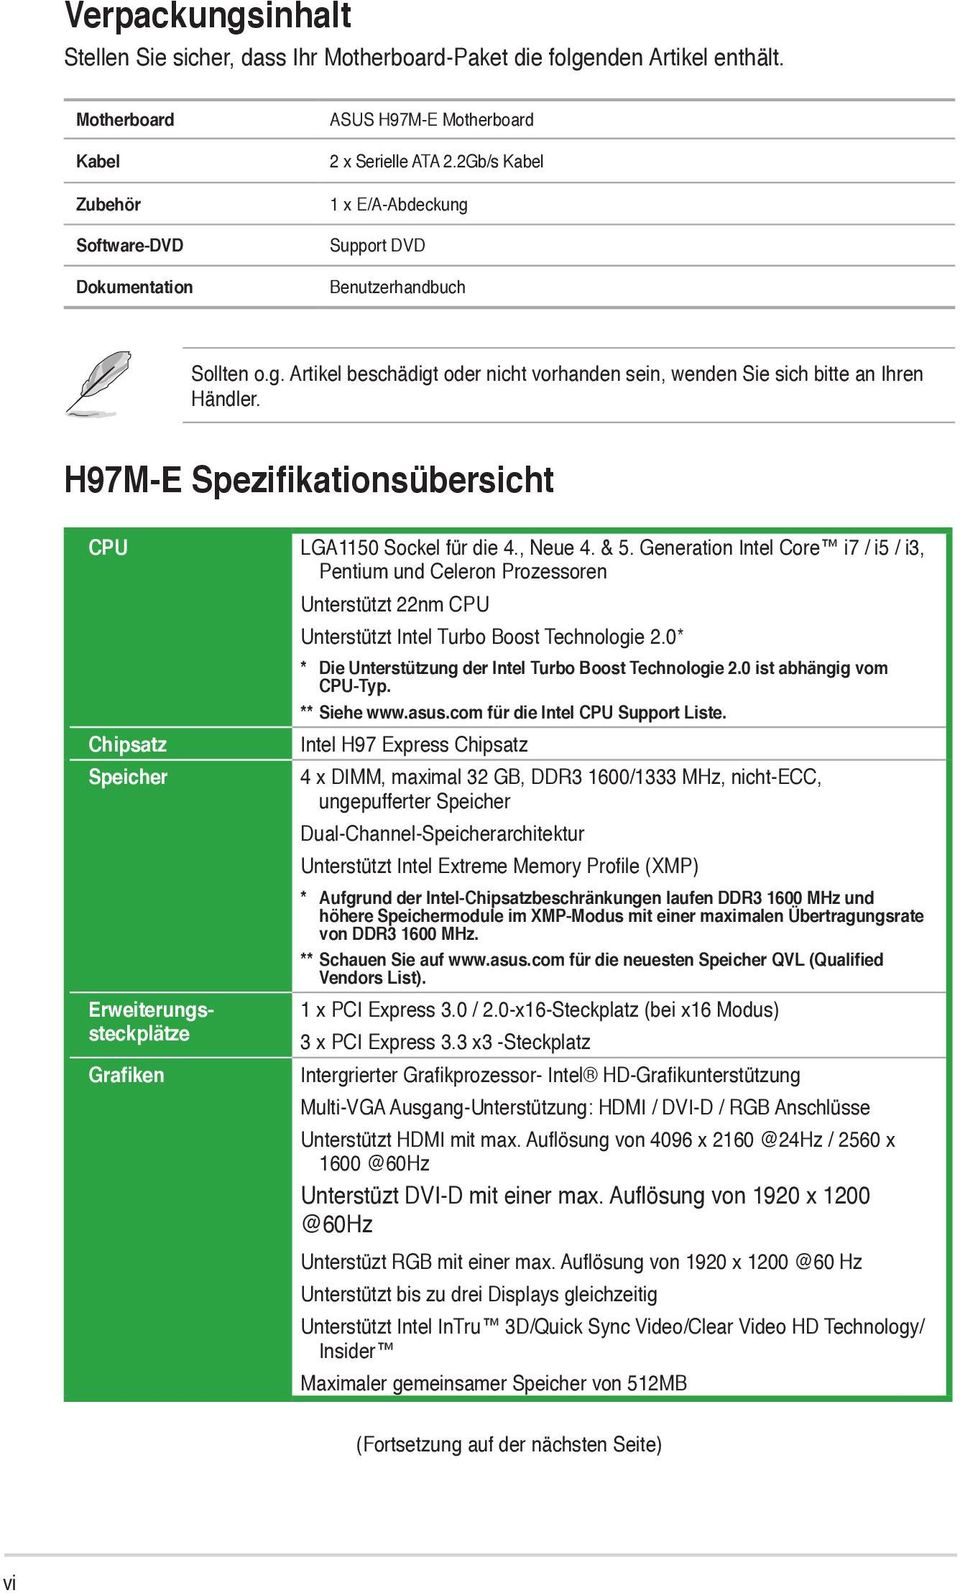 H97M-E Spezifikationsübersicht CPU LGA1150 Sockel für die 4., Neue 4. & 5.